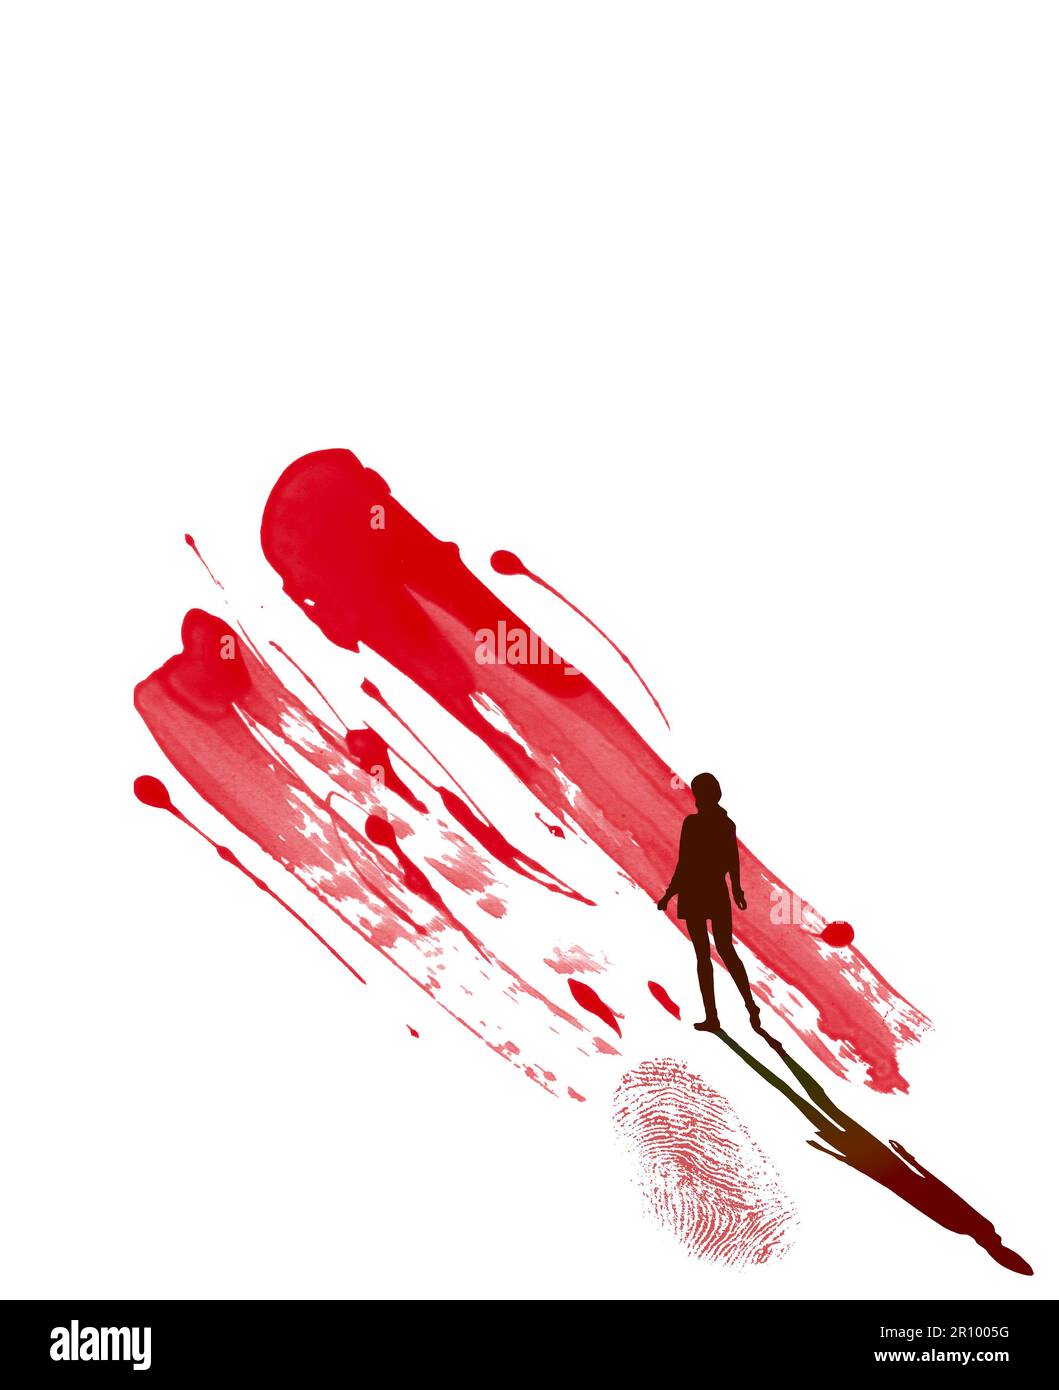 Una ragazza e un'ombra con silhouette sono viste con un'impronta sanguinosa e schizzi di sangue in un'illustrazione 3-d sulle prove di sangue in una scena del crimine. Foto Stock